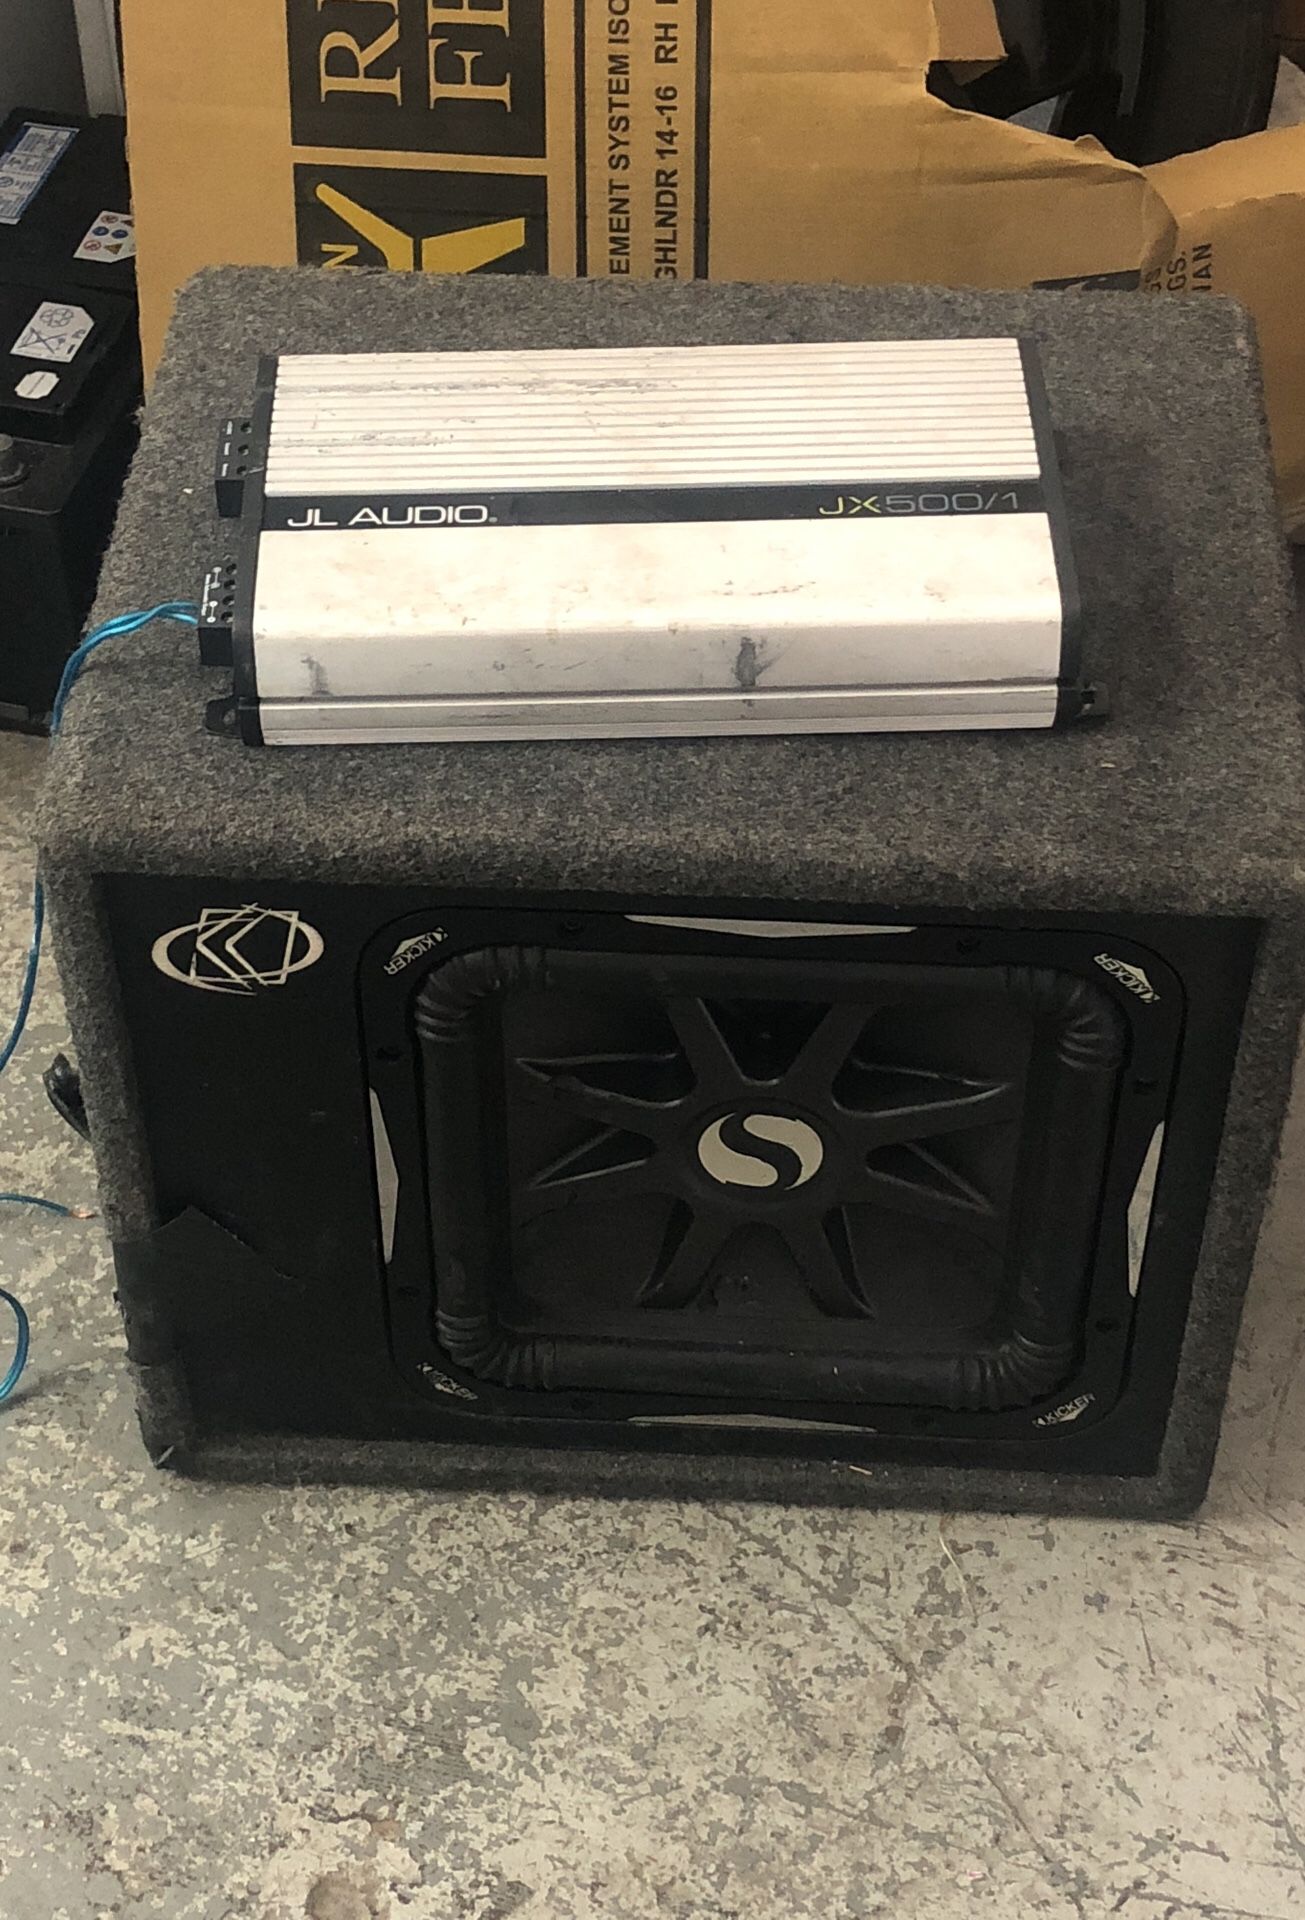 12 inch speaker L7 in a jL audio amp 375 obo